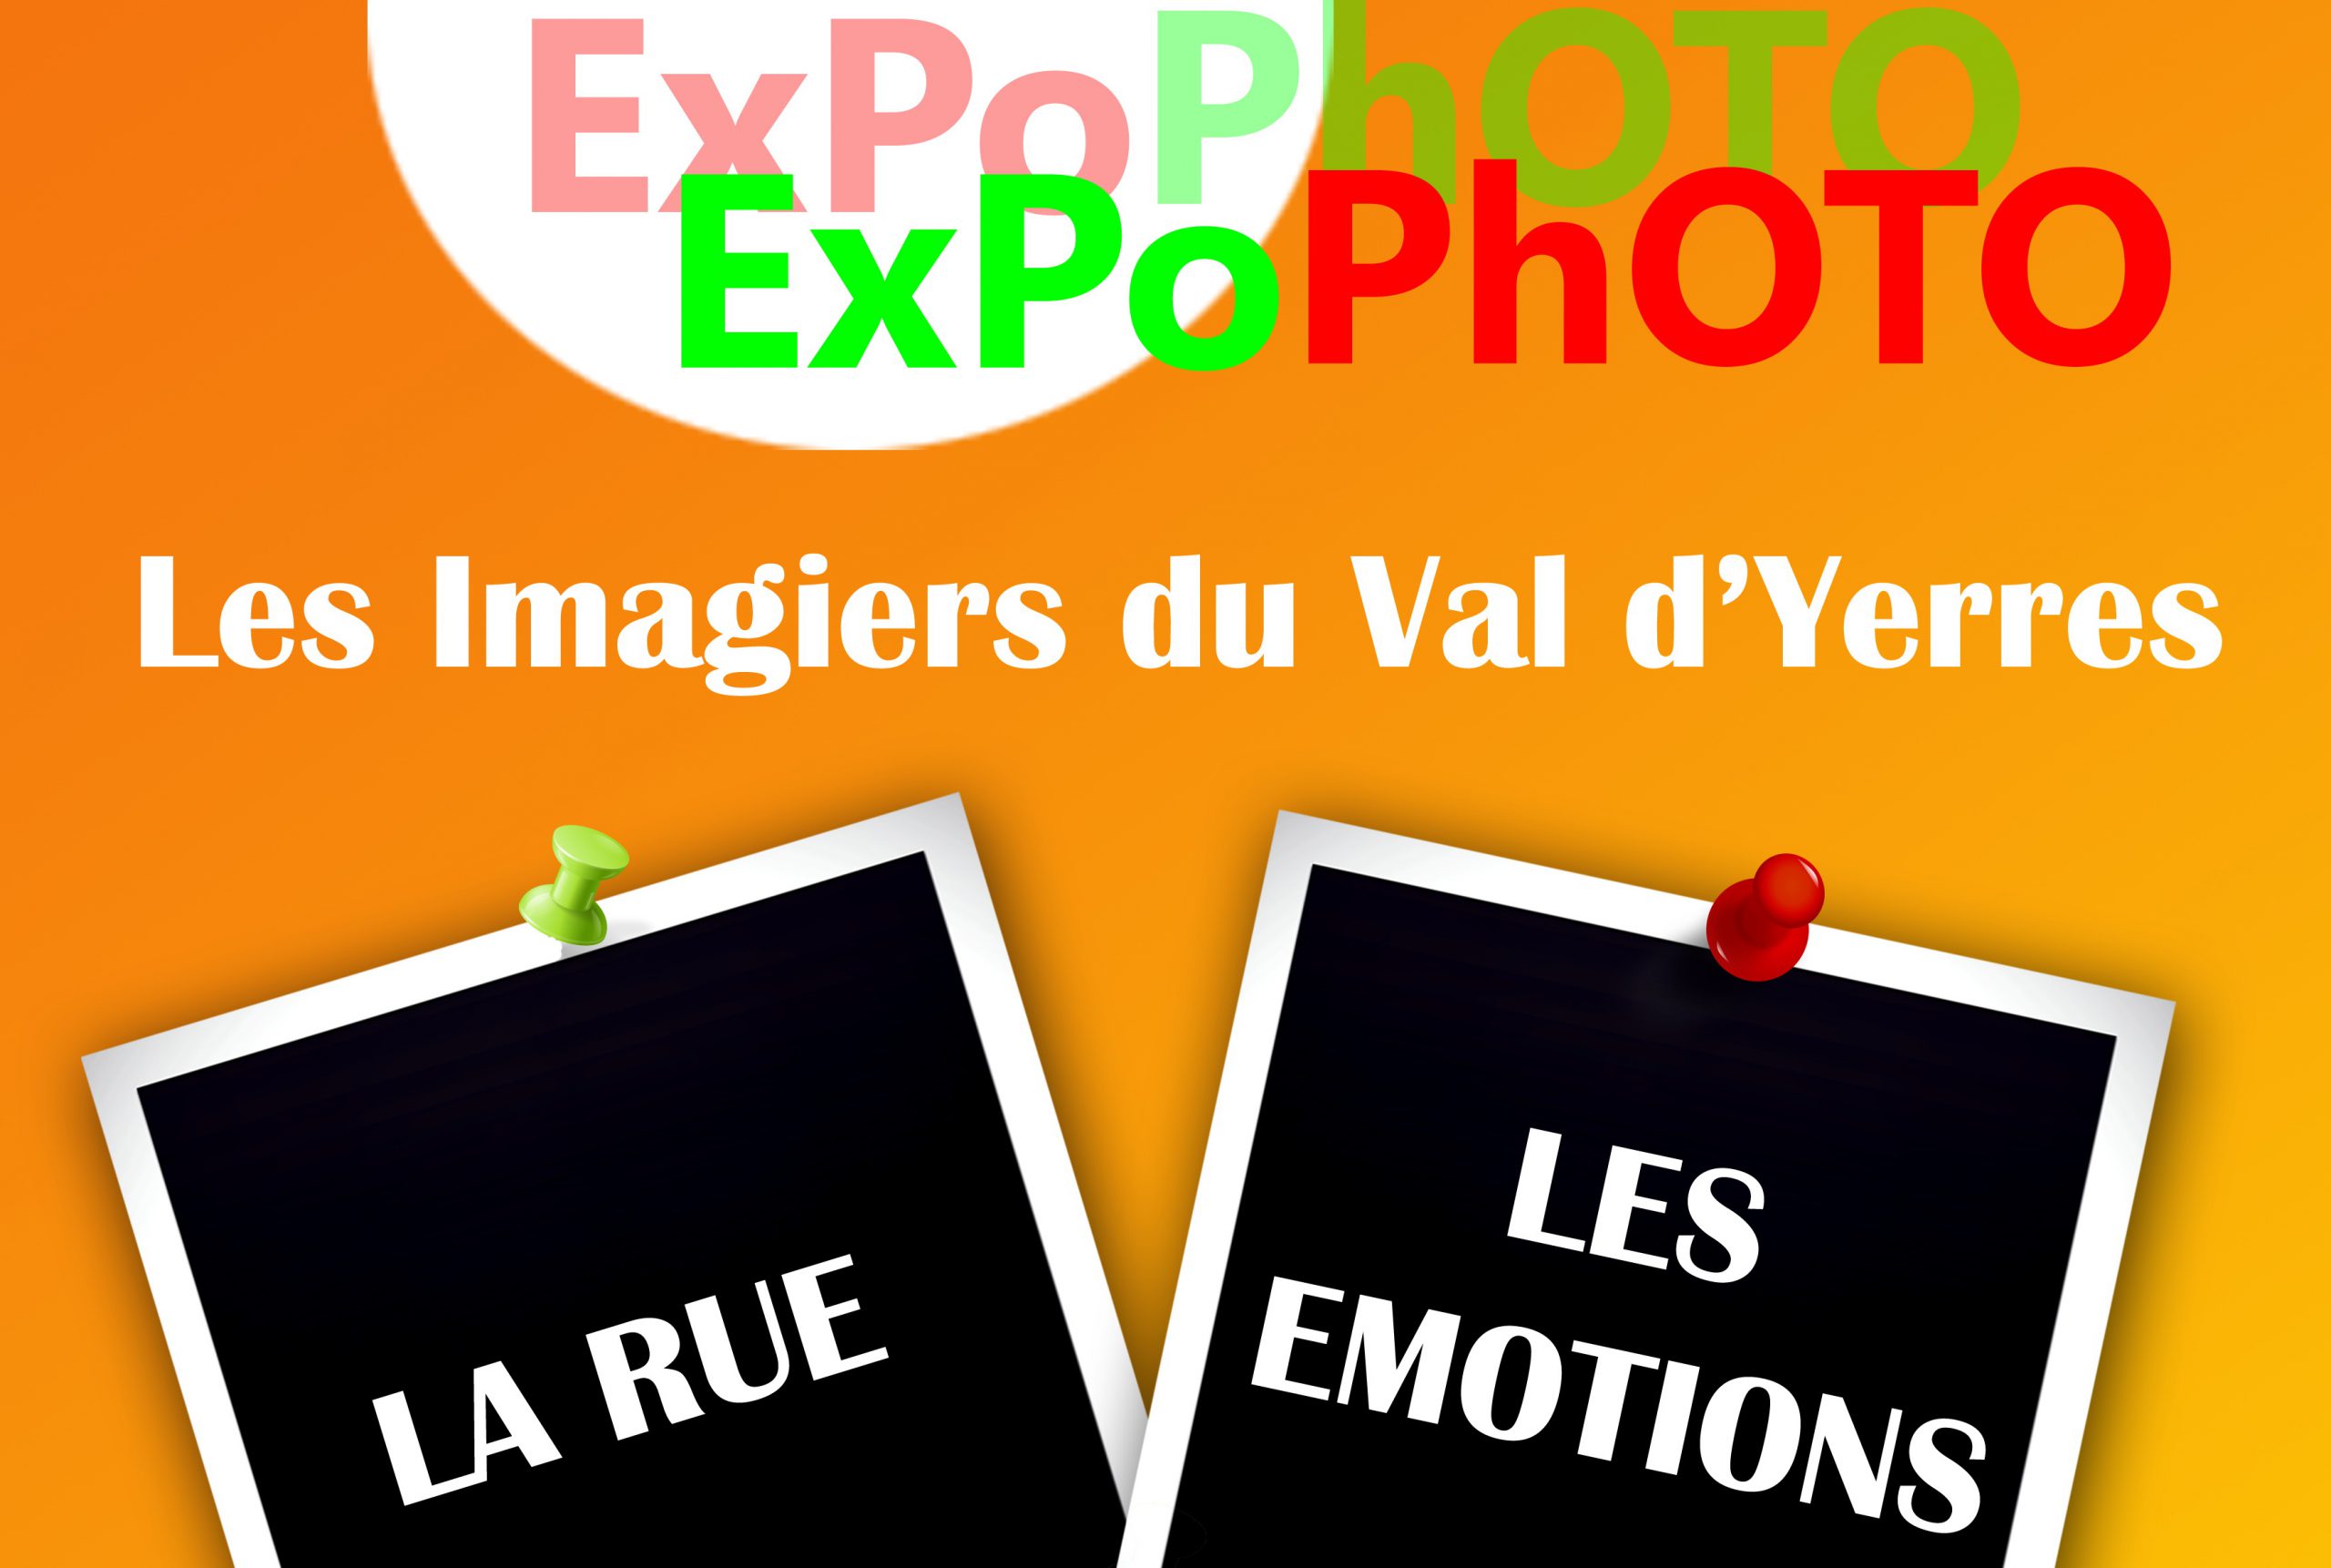 Expo Photo – la rue, les émotions